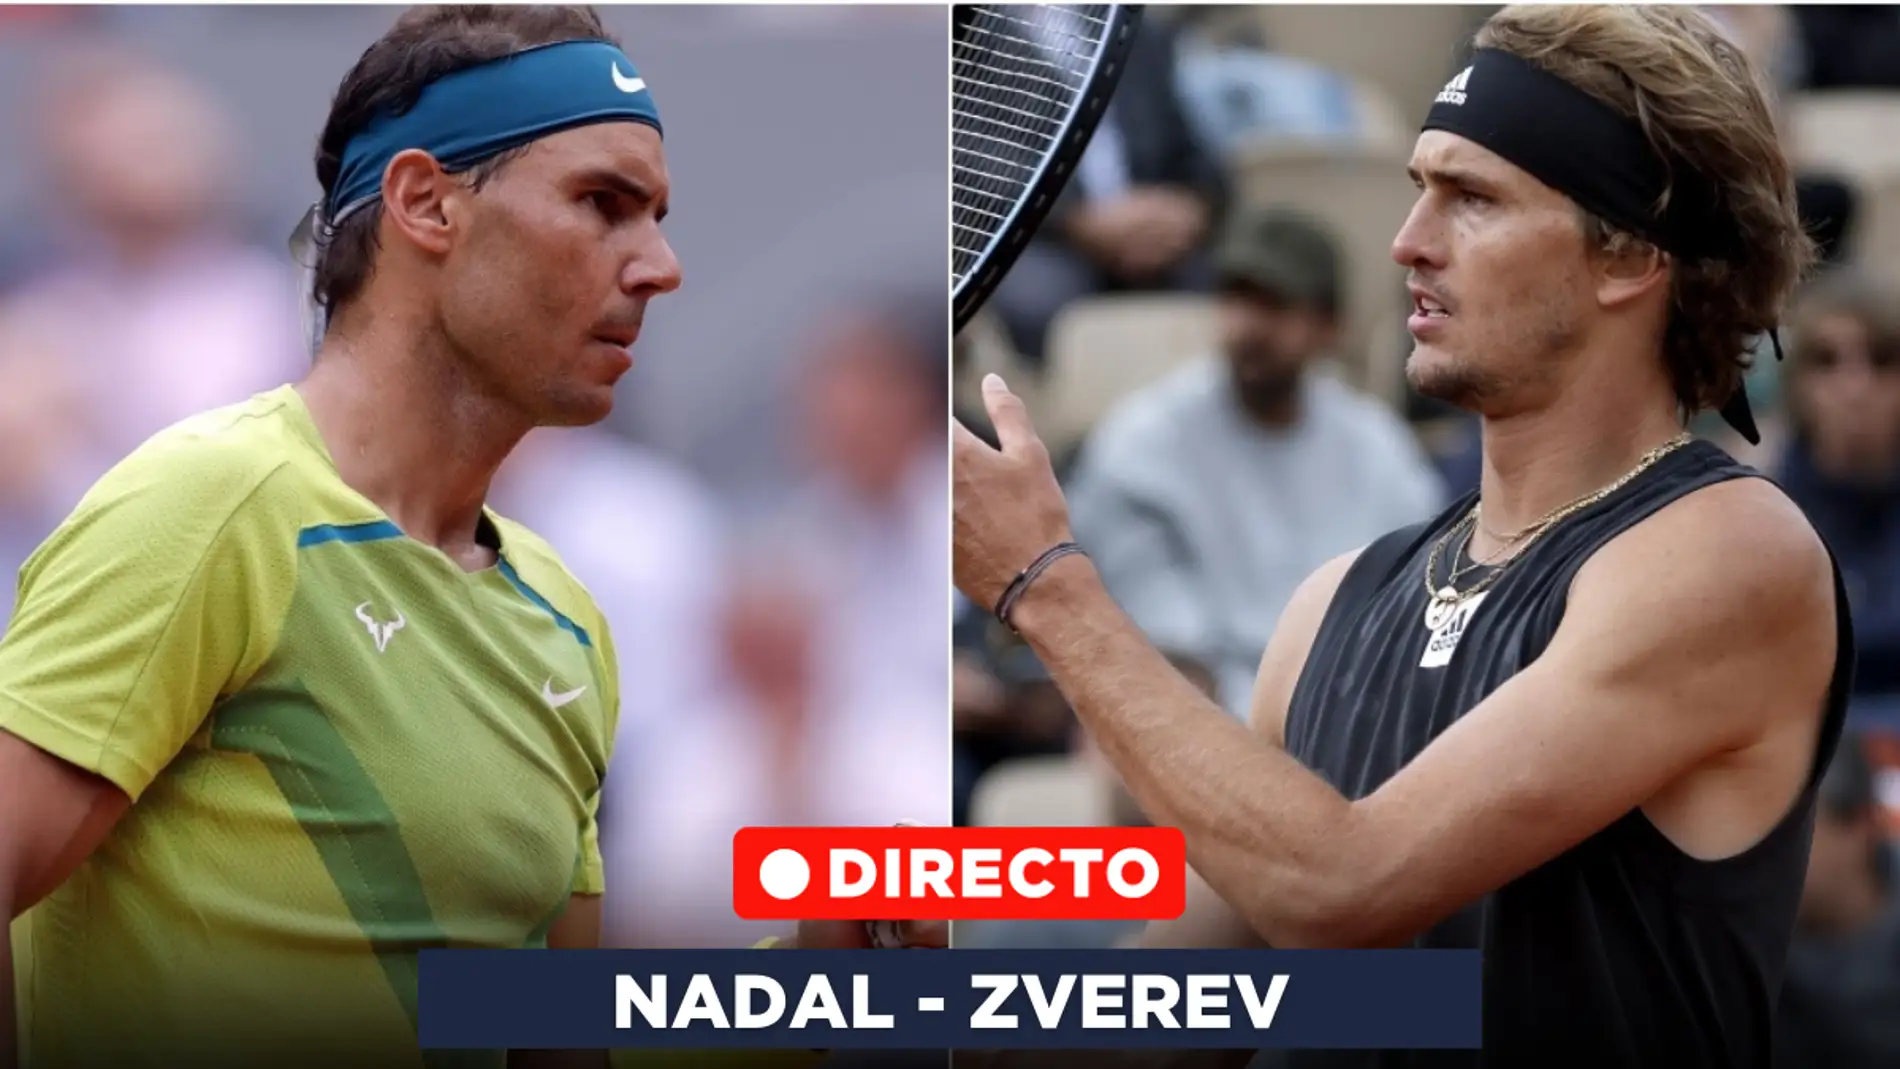 Nadal - Zverev, semifinales de Garros 2022: Zverev se el tobillo y Nadal pasa a la final | Onda Cero Radio